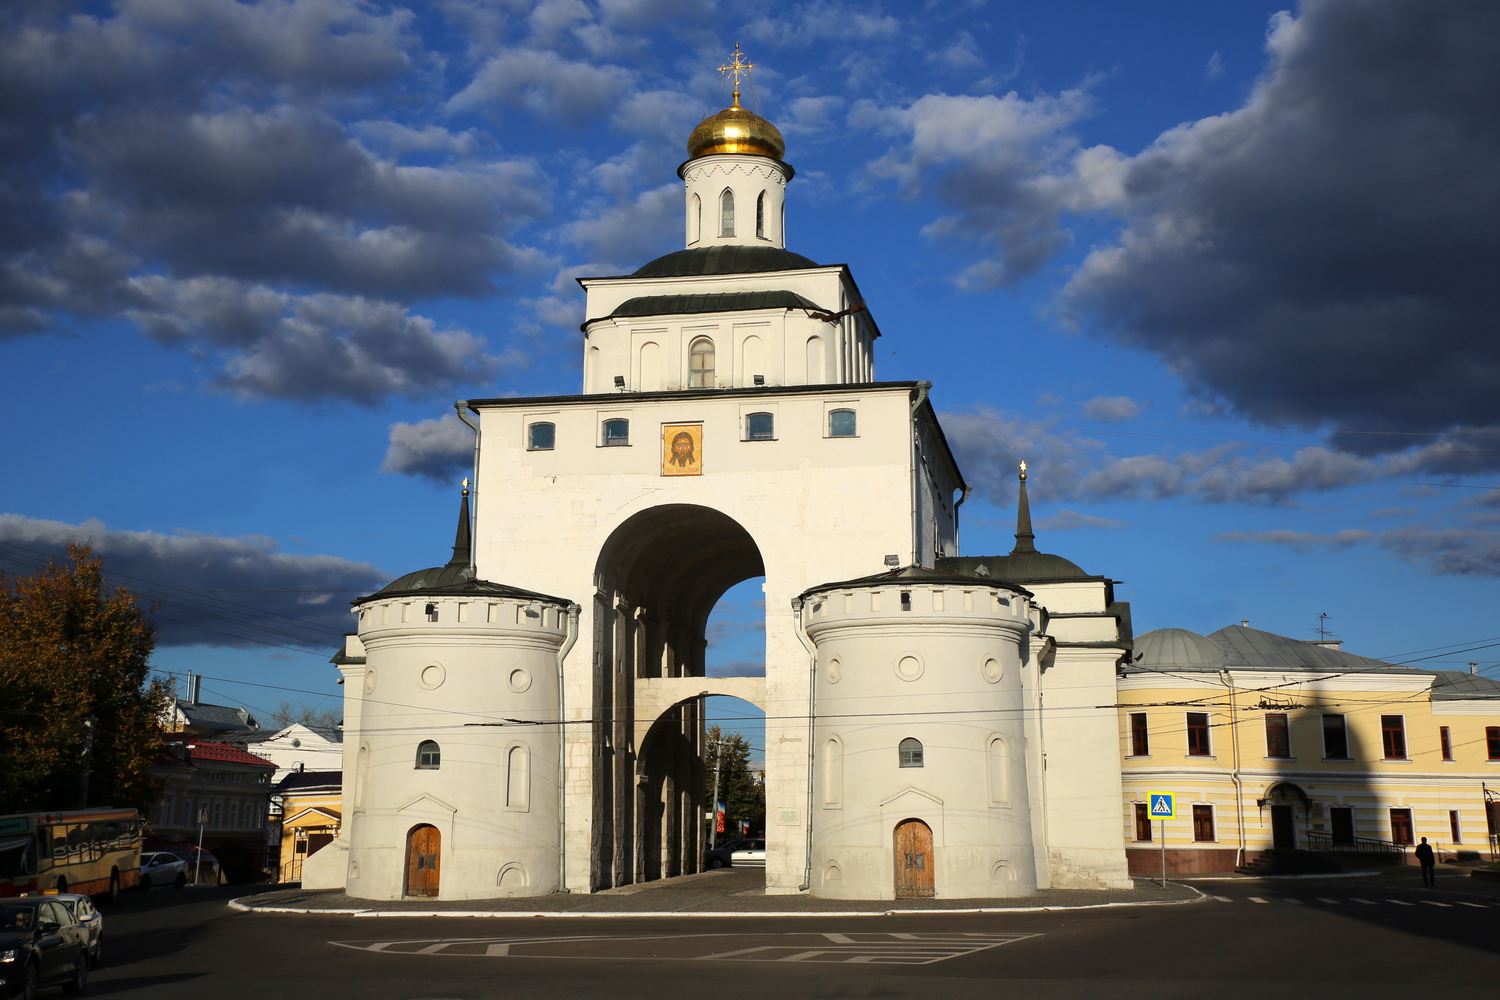 Золотые ворота золотое кольцо россии. Золотые ворота Андрея Боголюбского во Владимире 1164.